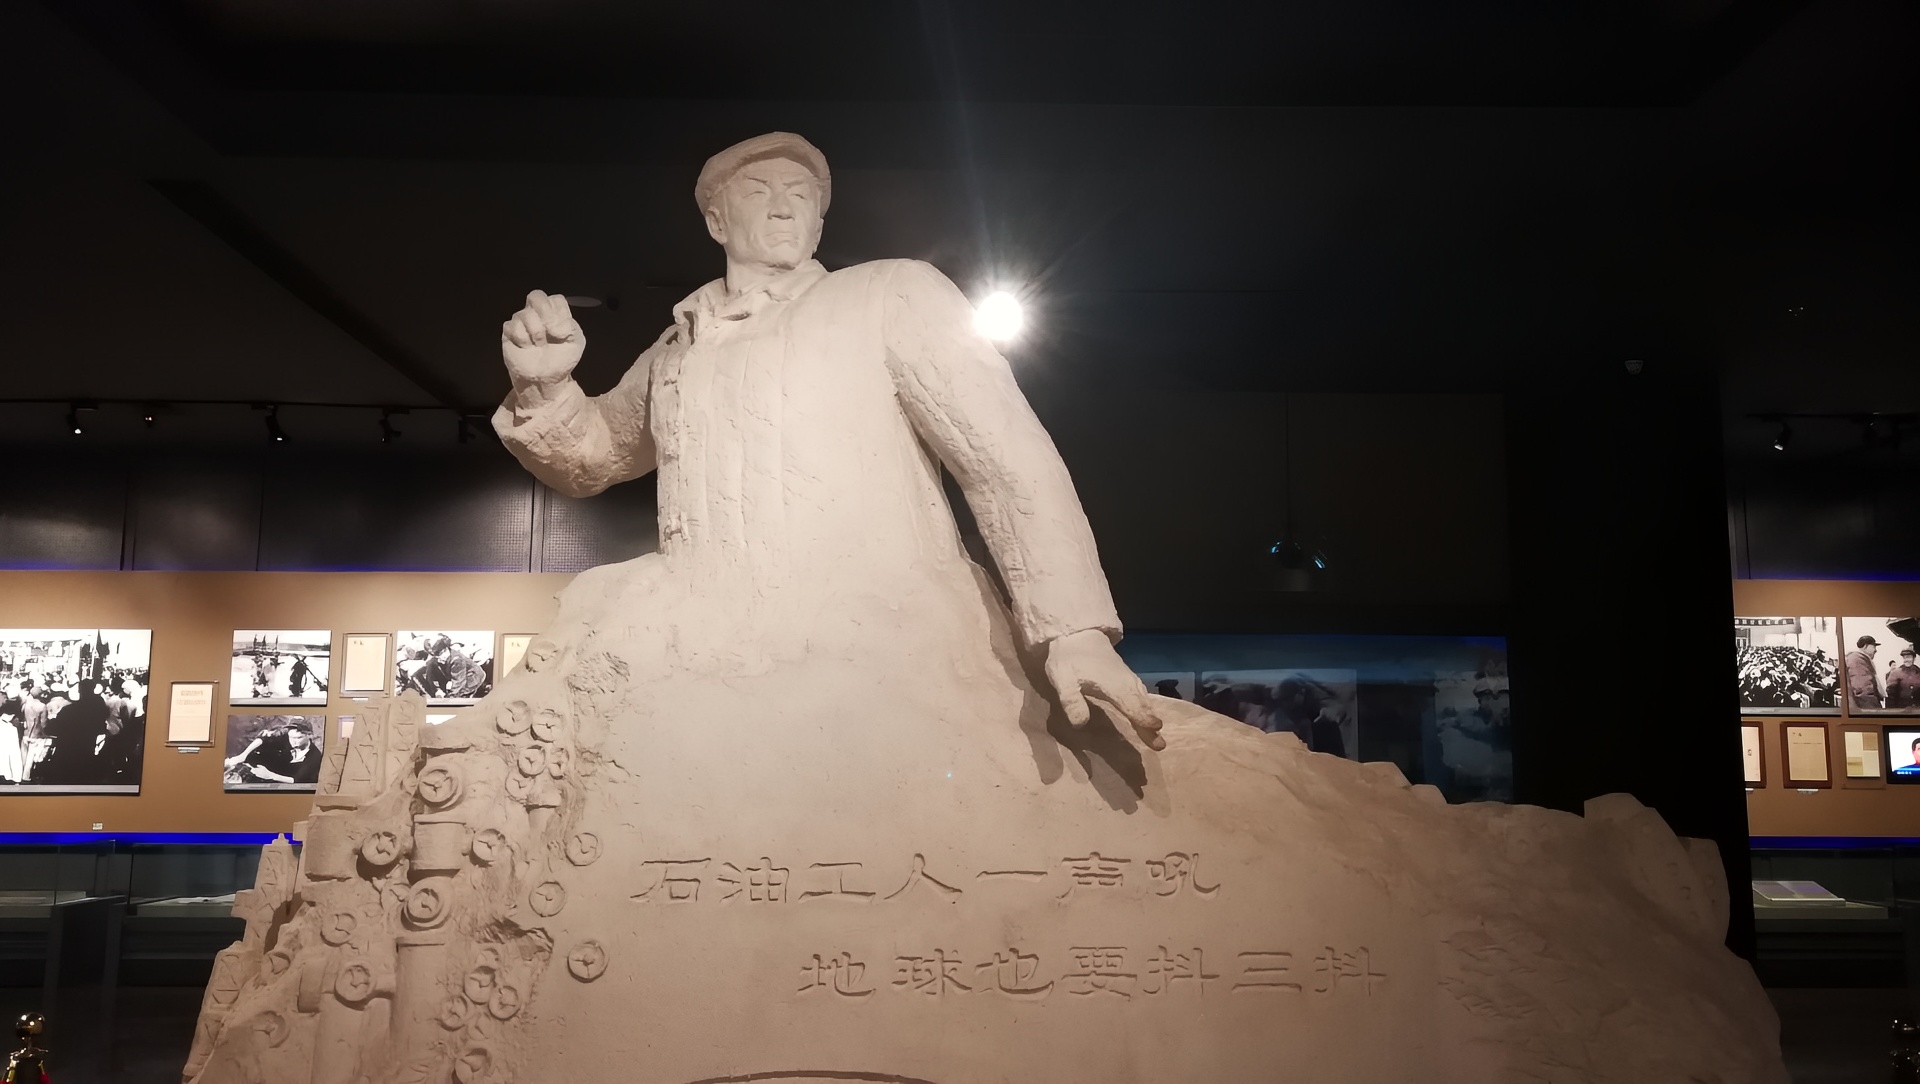 来到大庆,位于大庆市让湖路世纪大道的"铁人王进喜纪念馆"是首选地